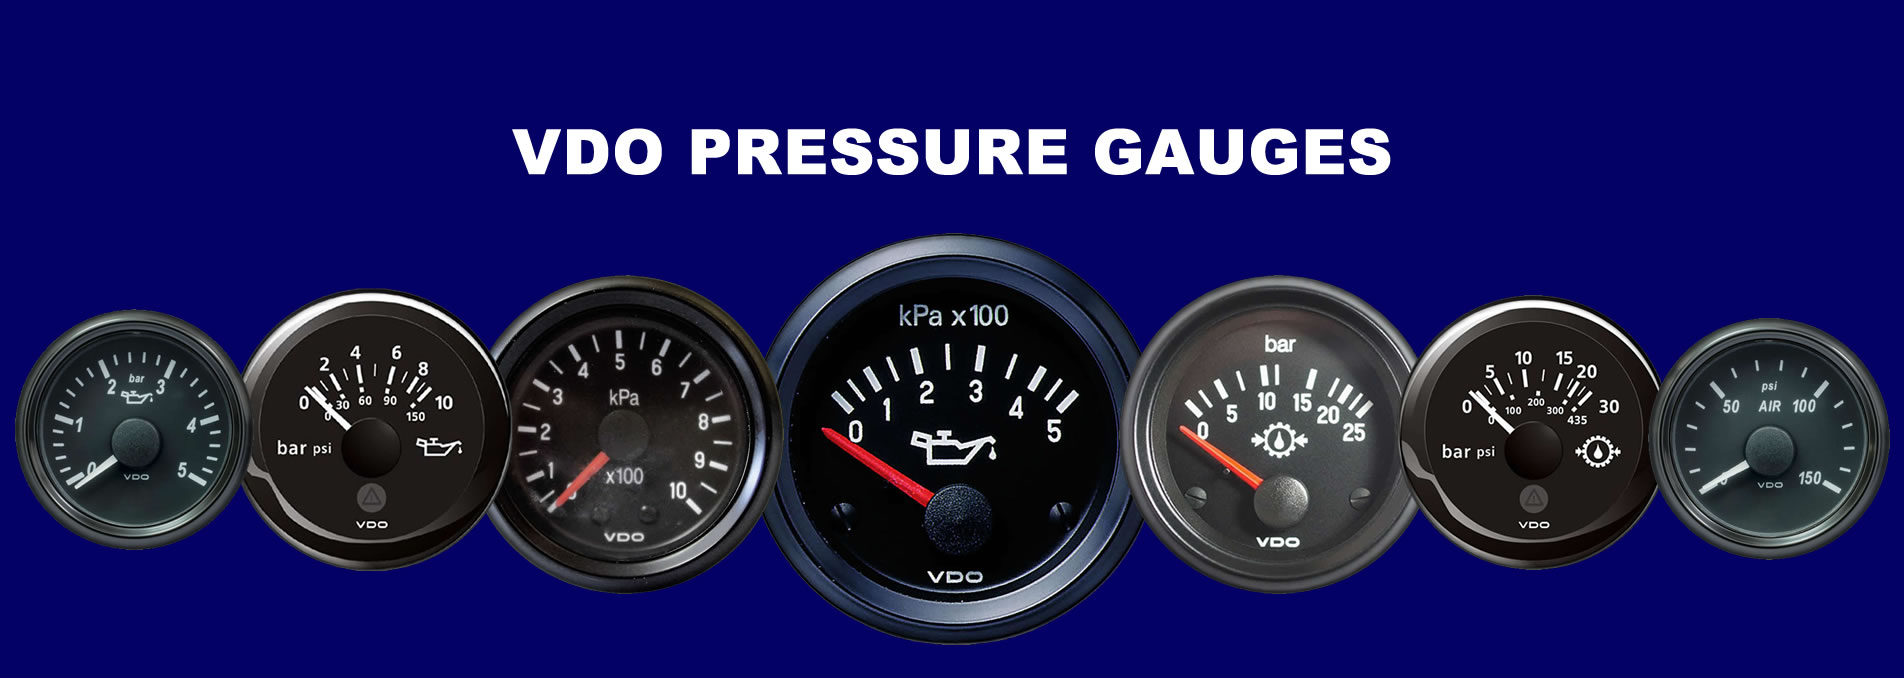 vdo pressure gauges banner